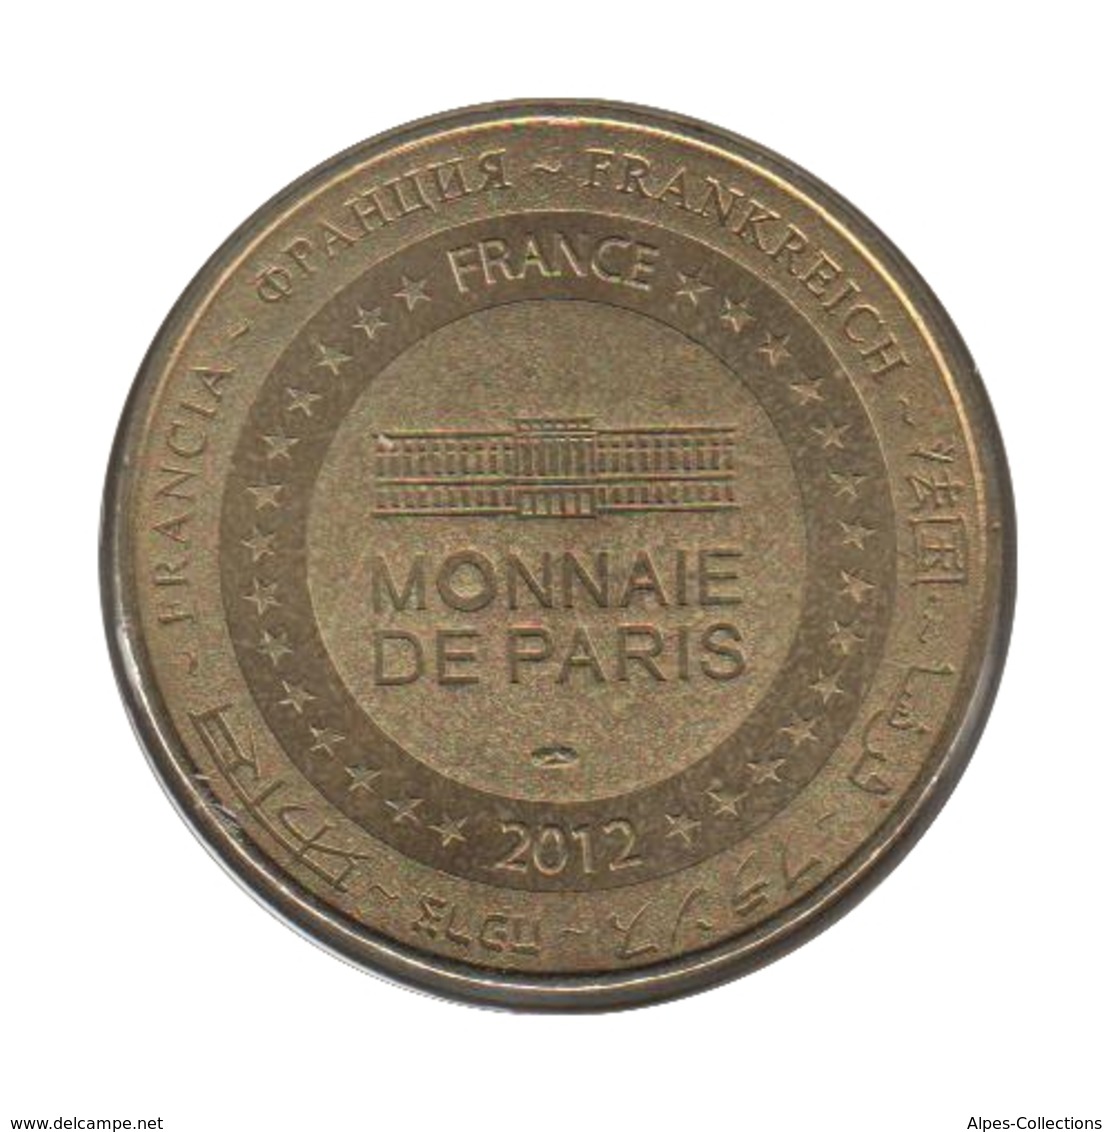 09006 - MEDAILLE TOURISTIQUE MONNAIE DE PARIS 09 - Mirepoix Cité Médiévale - 2012 - 2012